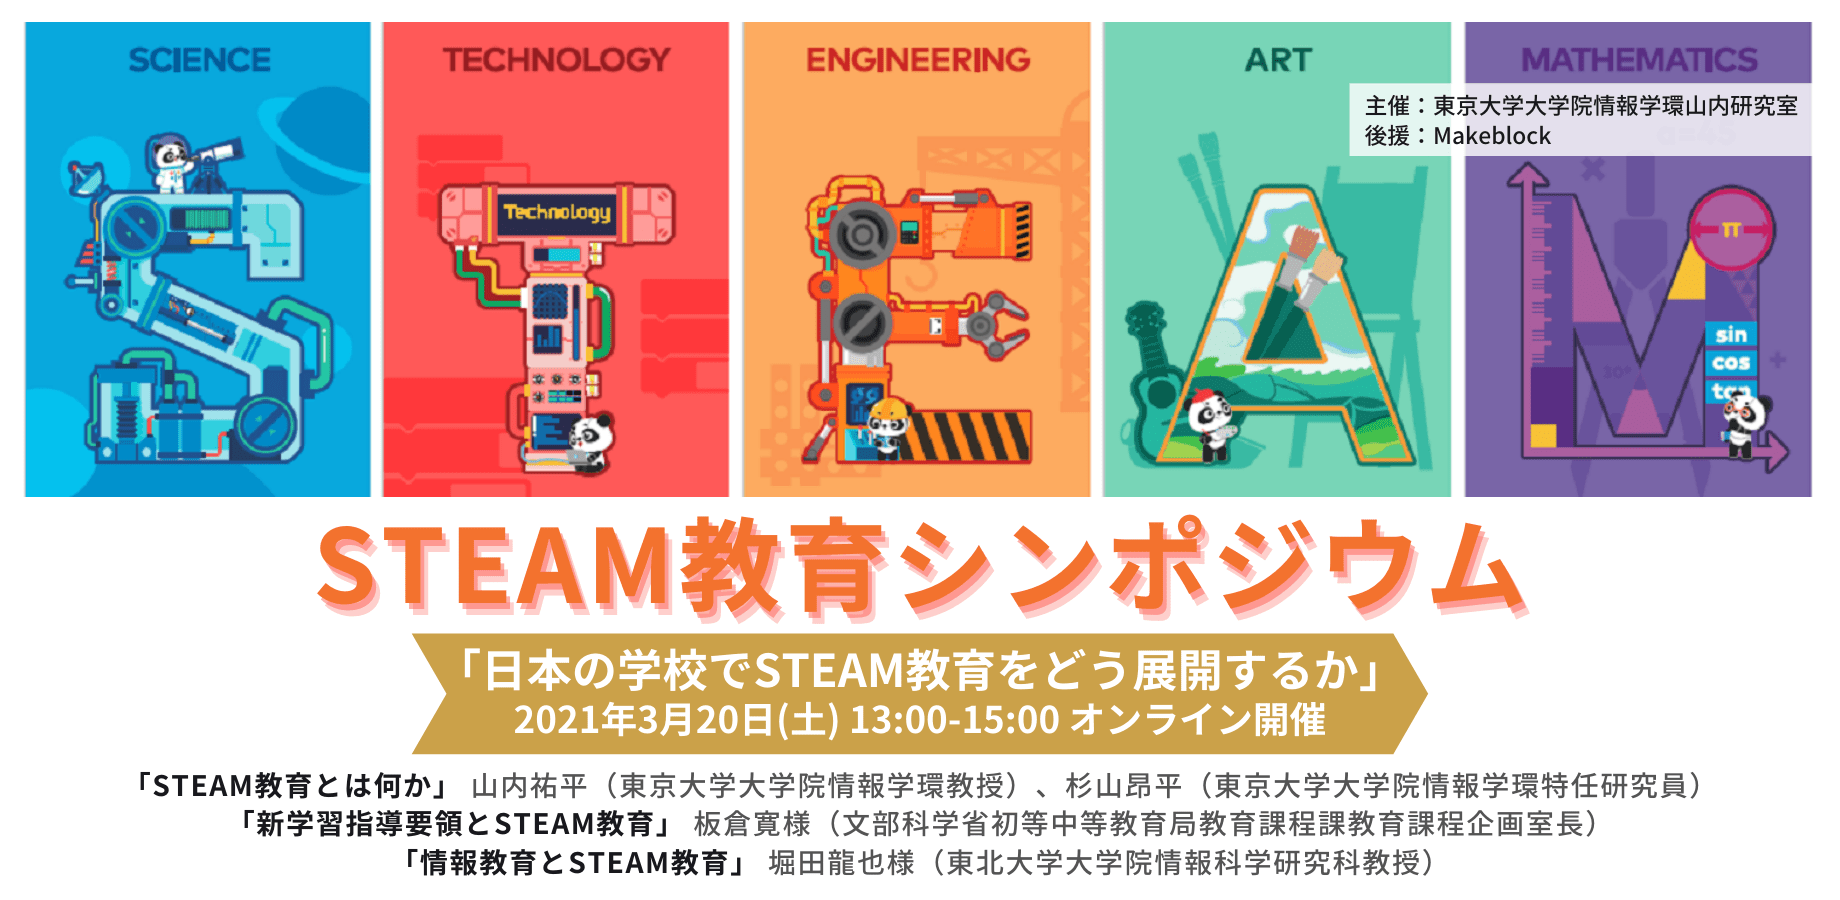 【開催報告】STEAM教育シンポジウム「日本の学校でSTEAM教育をどう展開するか」